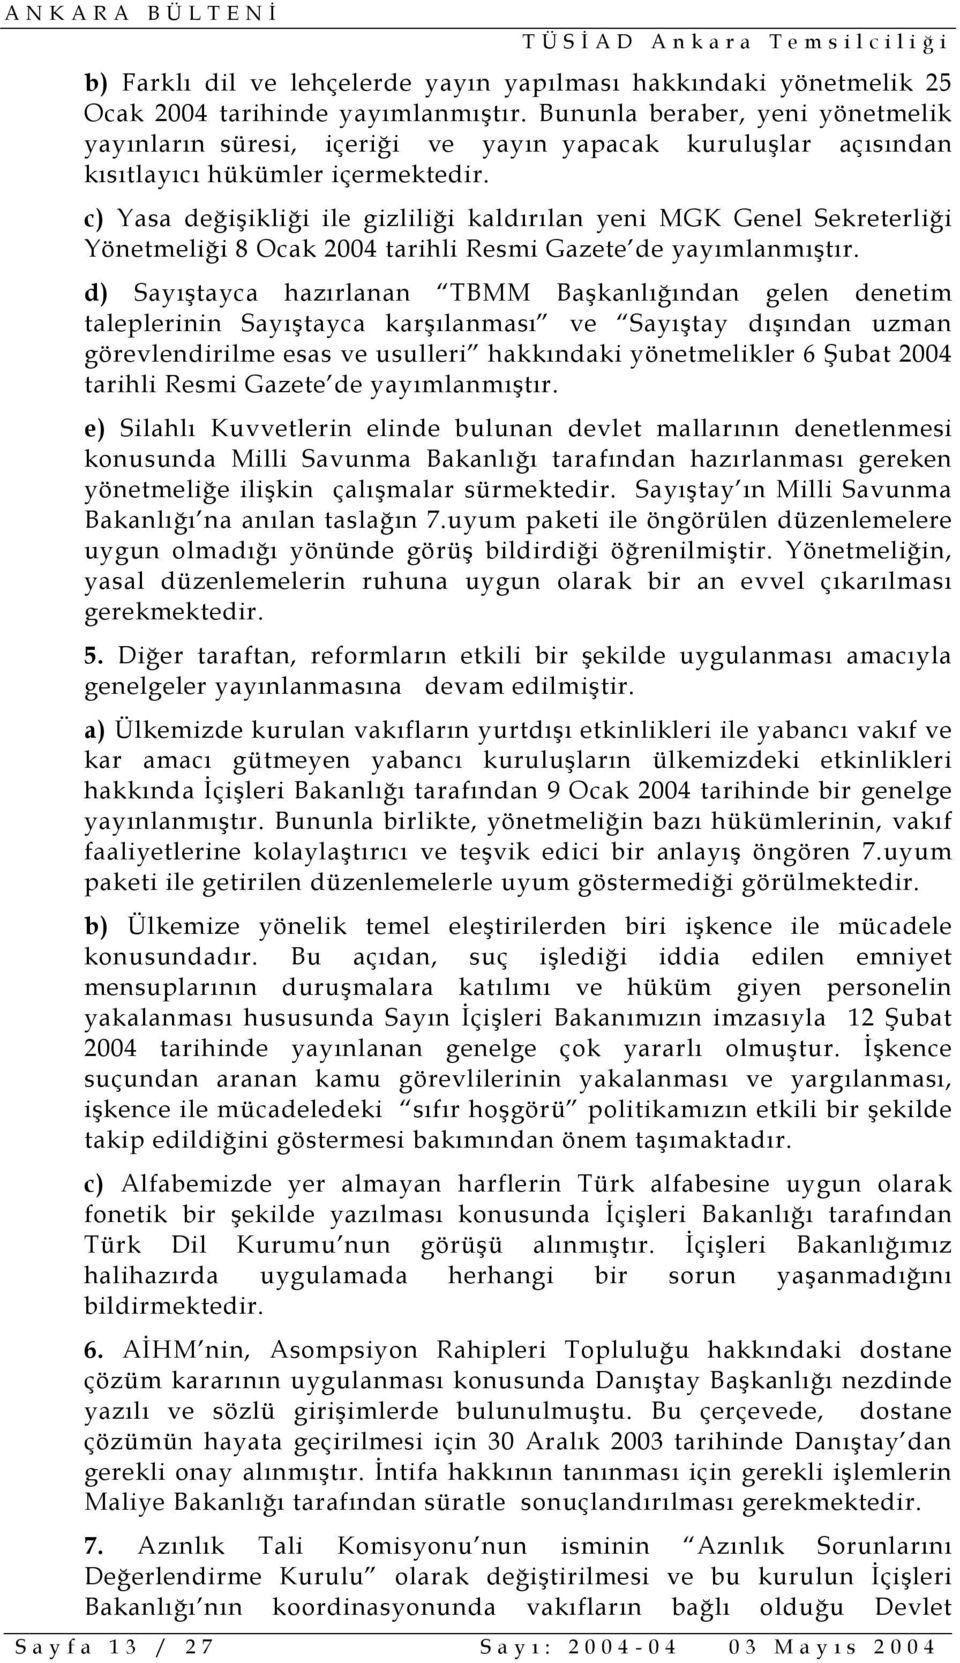 c) Yasa değişikliği ile gizliliği kaldırılan yeni MGK Genel Sekreterliği Yönetmeliği 8 Ocak 2004 tarihli Resmi Gazete de yayımlanmıştır.